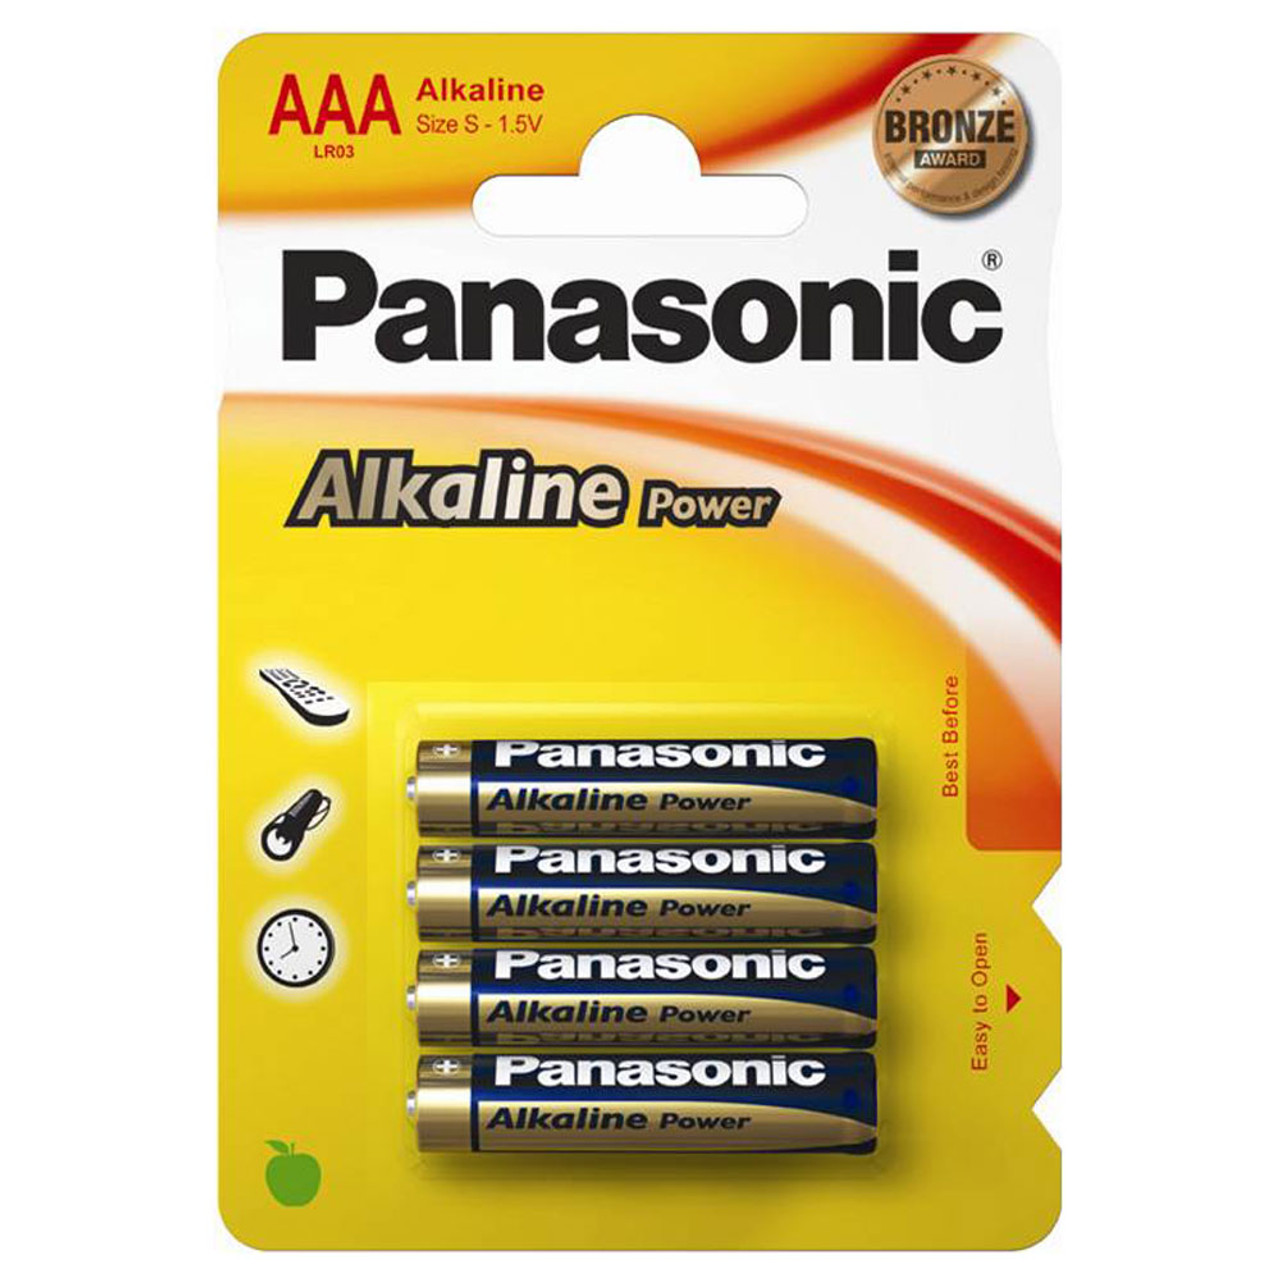 Panasonic Pro Power AAA LR03 Batteries